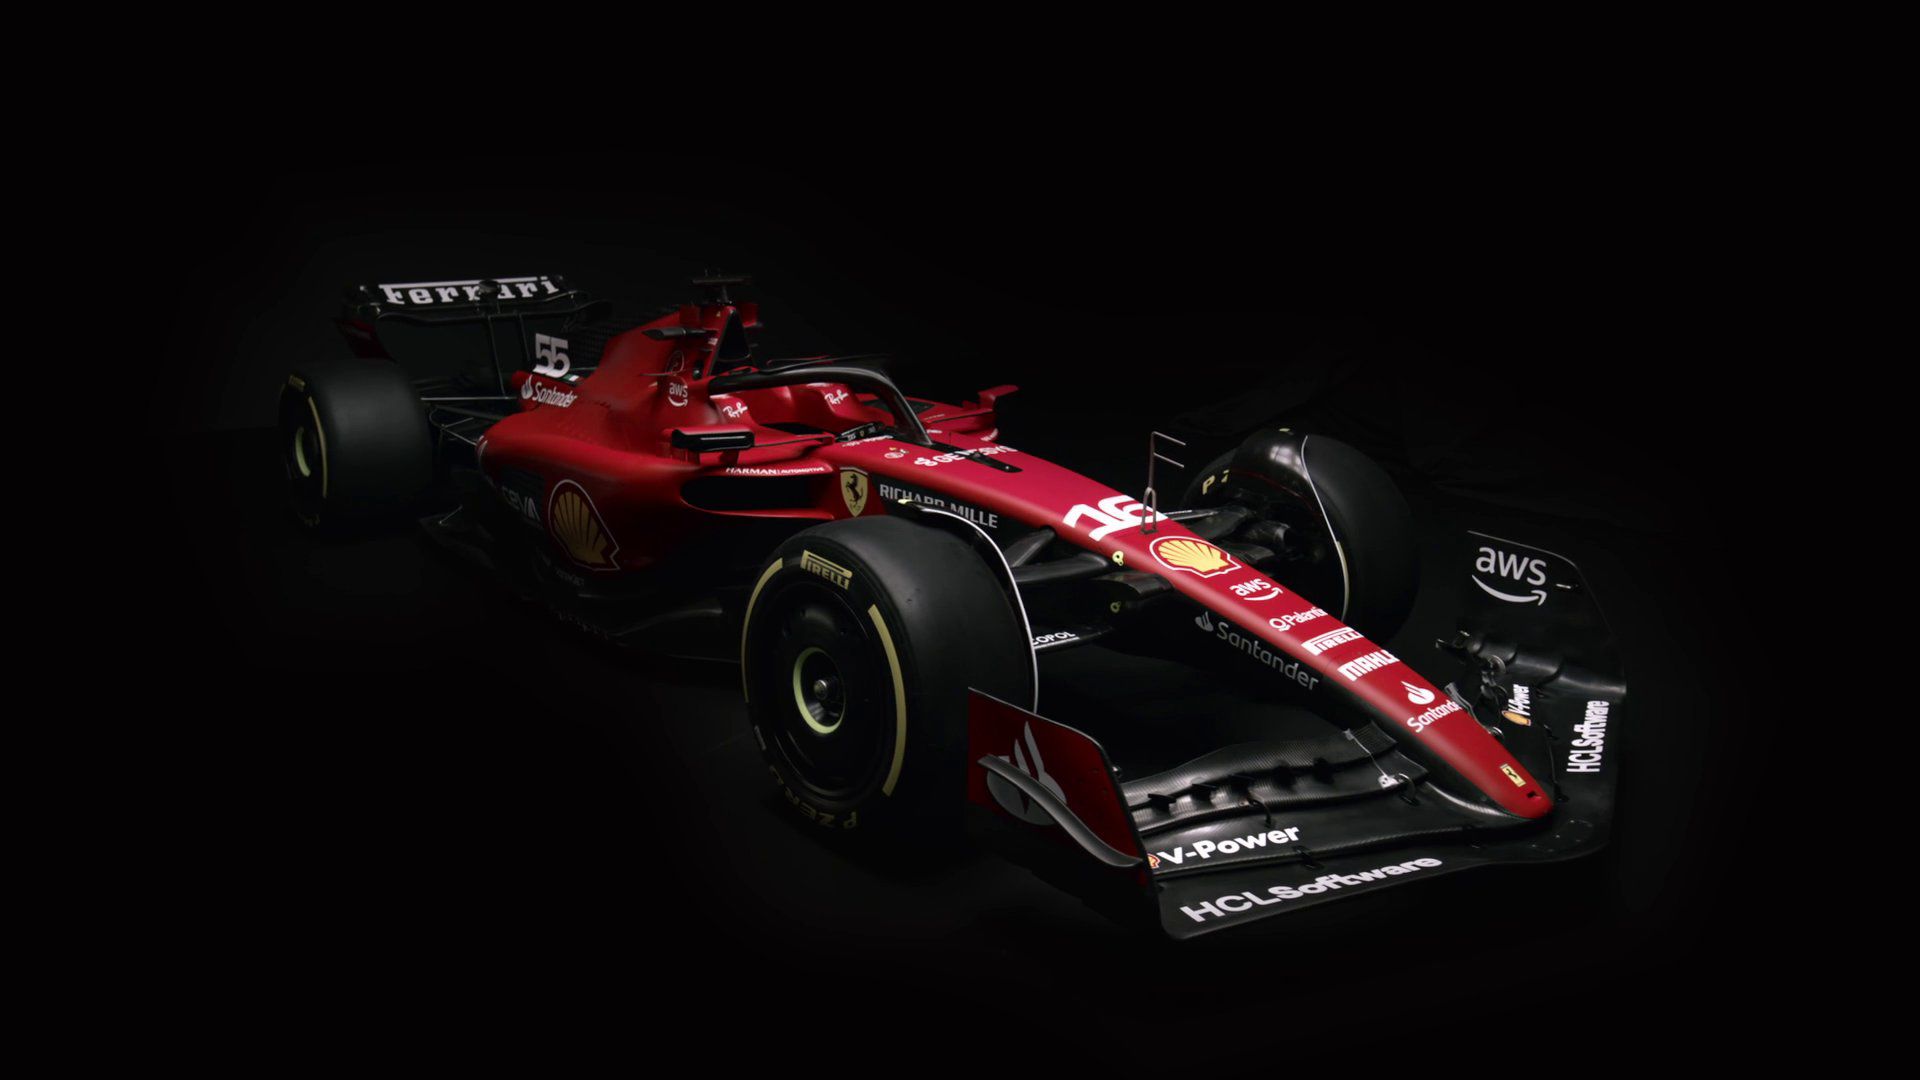 Bemutatták az új Ferrarit; világbajnoki címre törnek – fotókkal